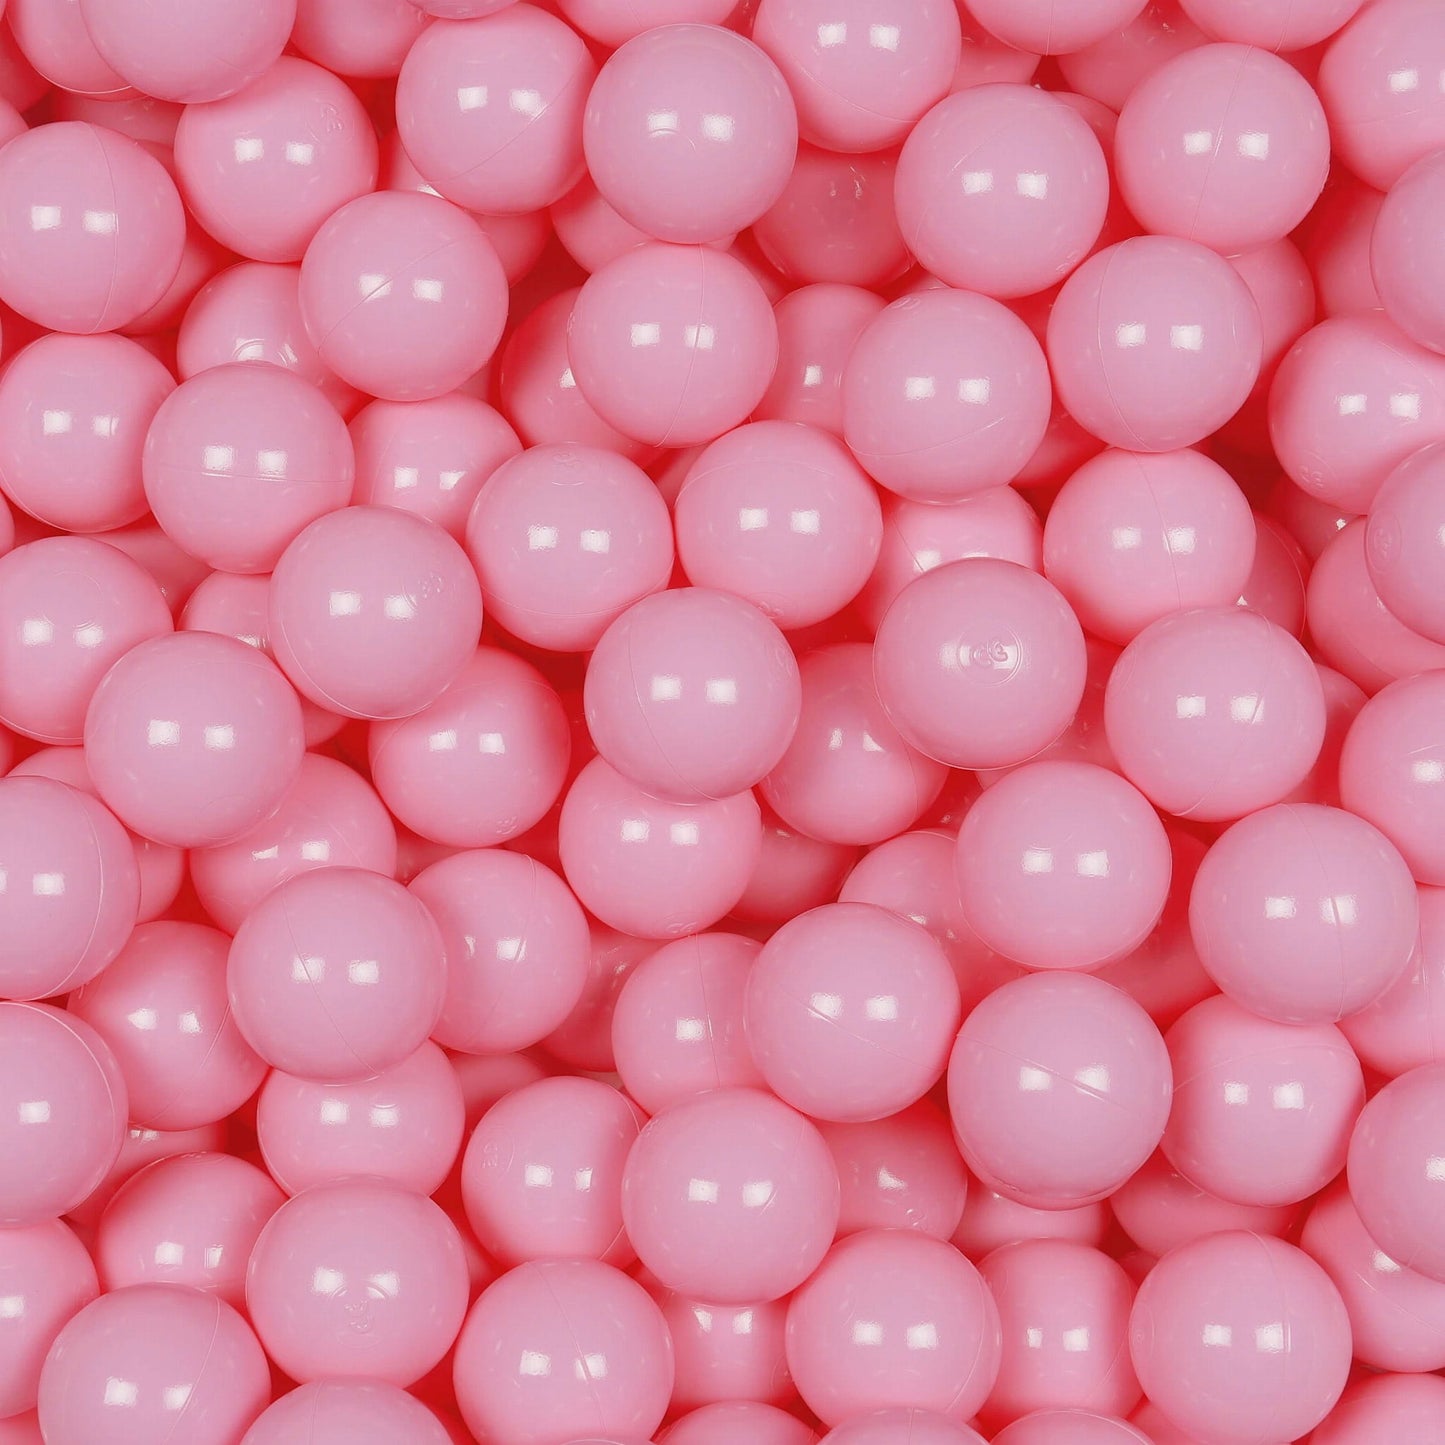 Piscine à Balles 110x40cm rose poudré avec balles 500pcs (blanc, gris, rose poudré)